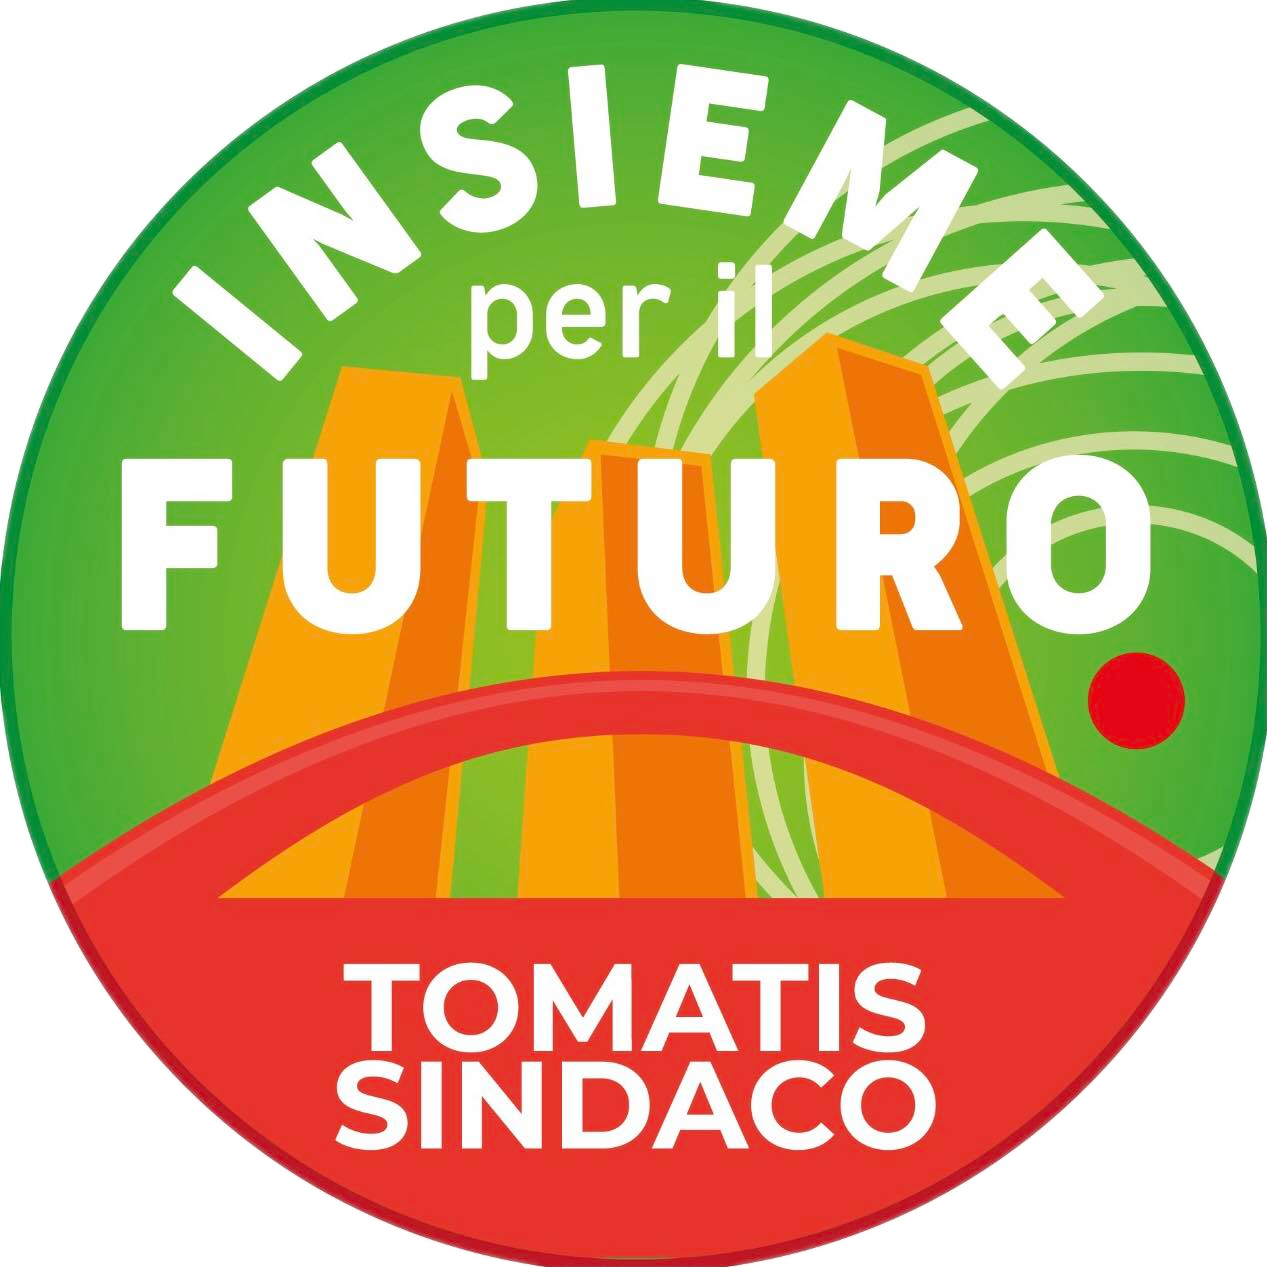 INSIEME PER IL FUTURO - Tomati